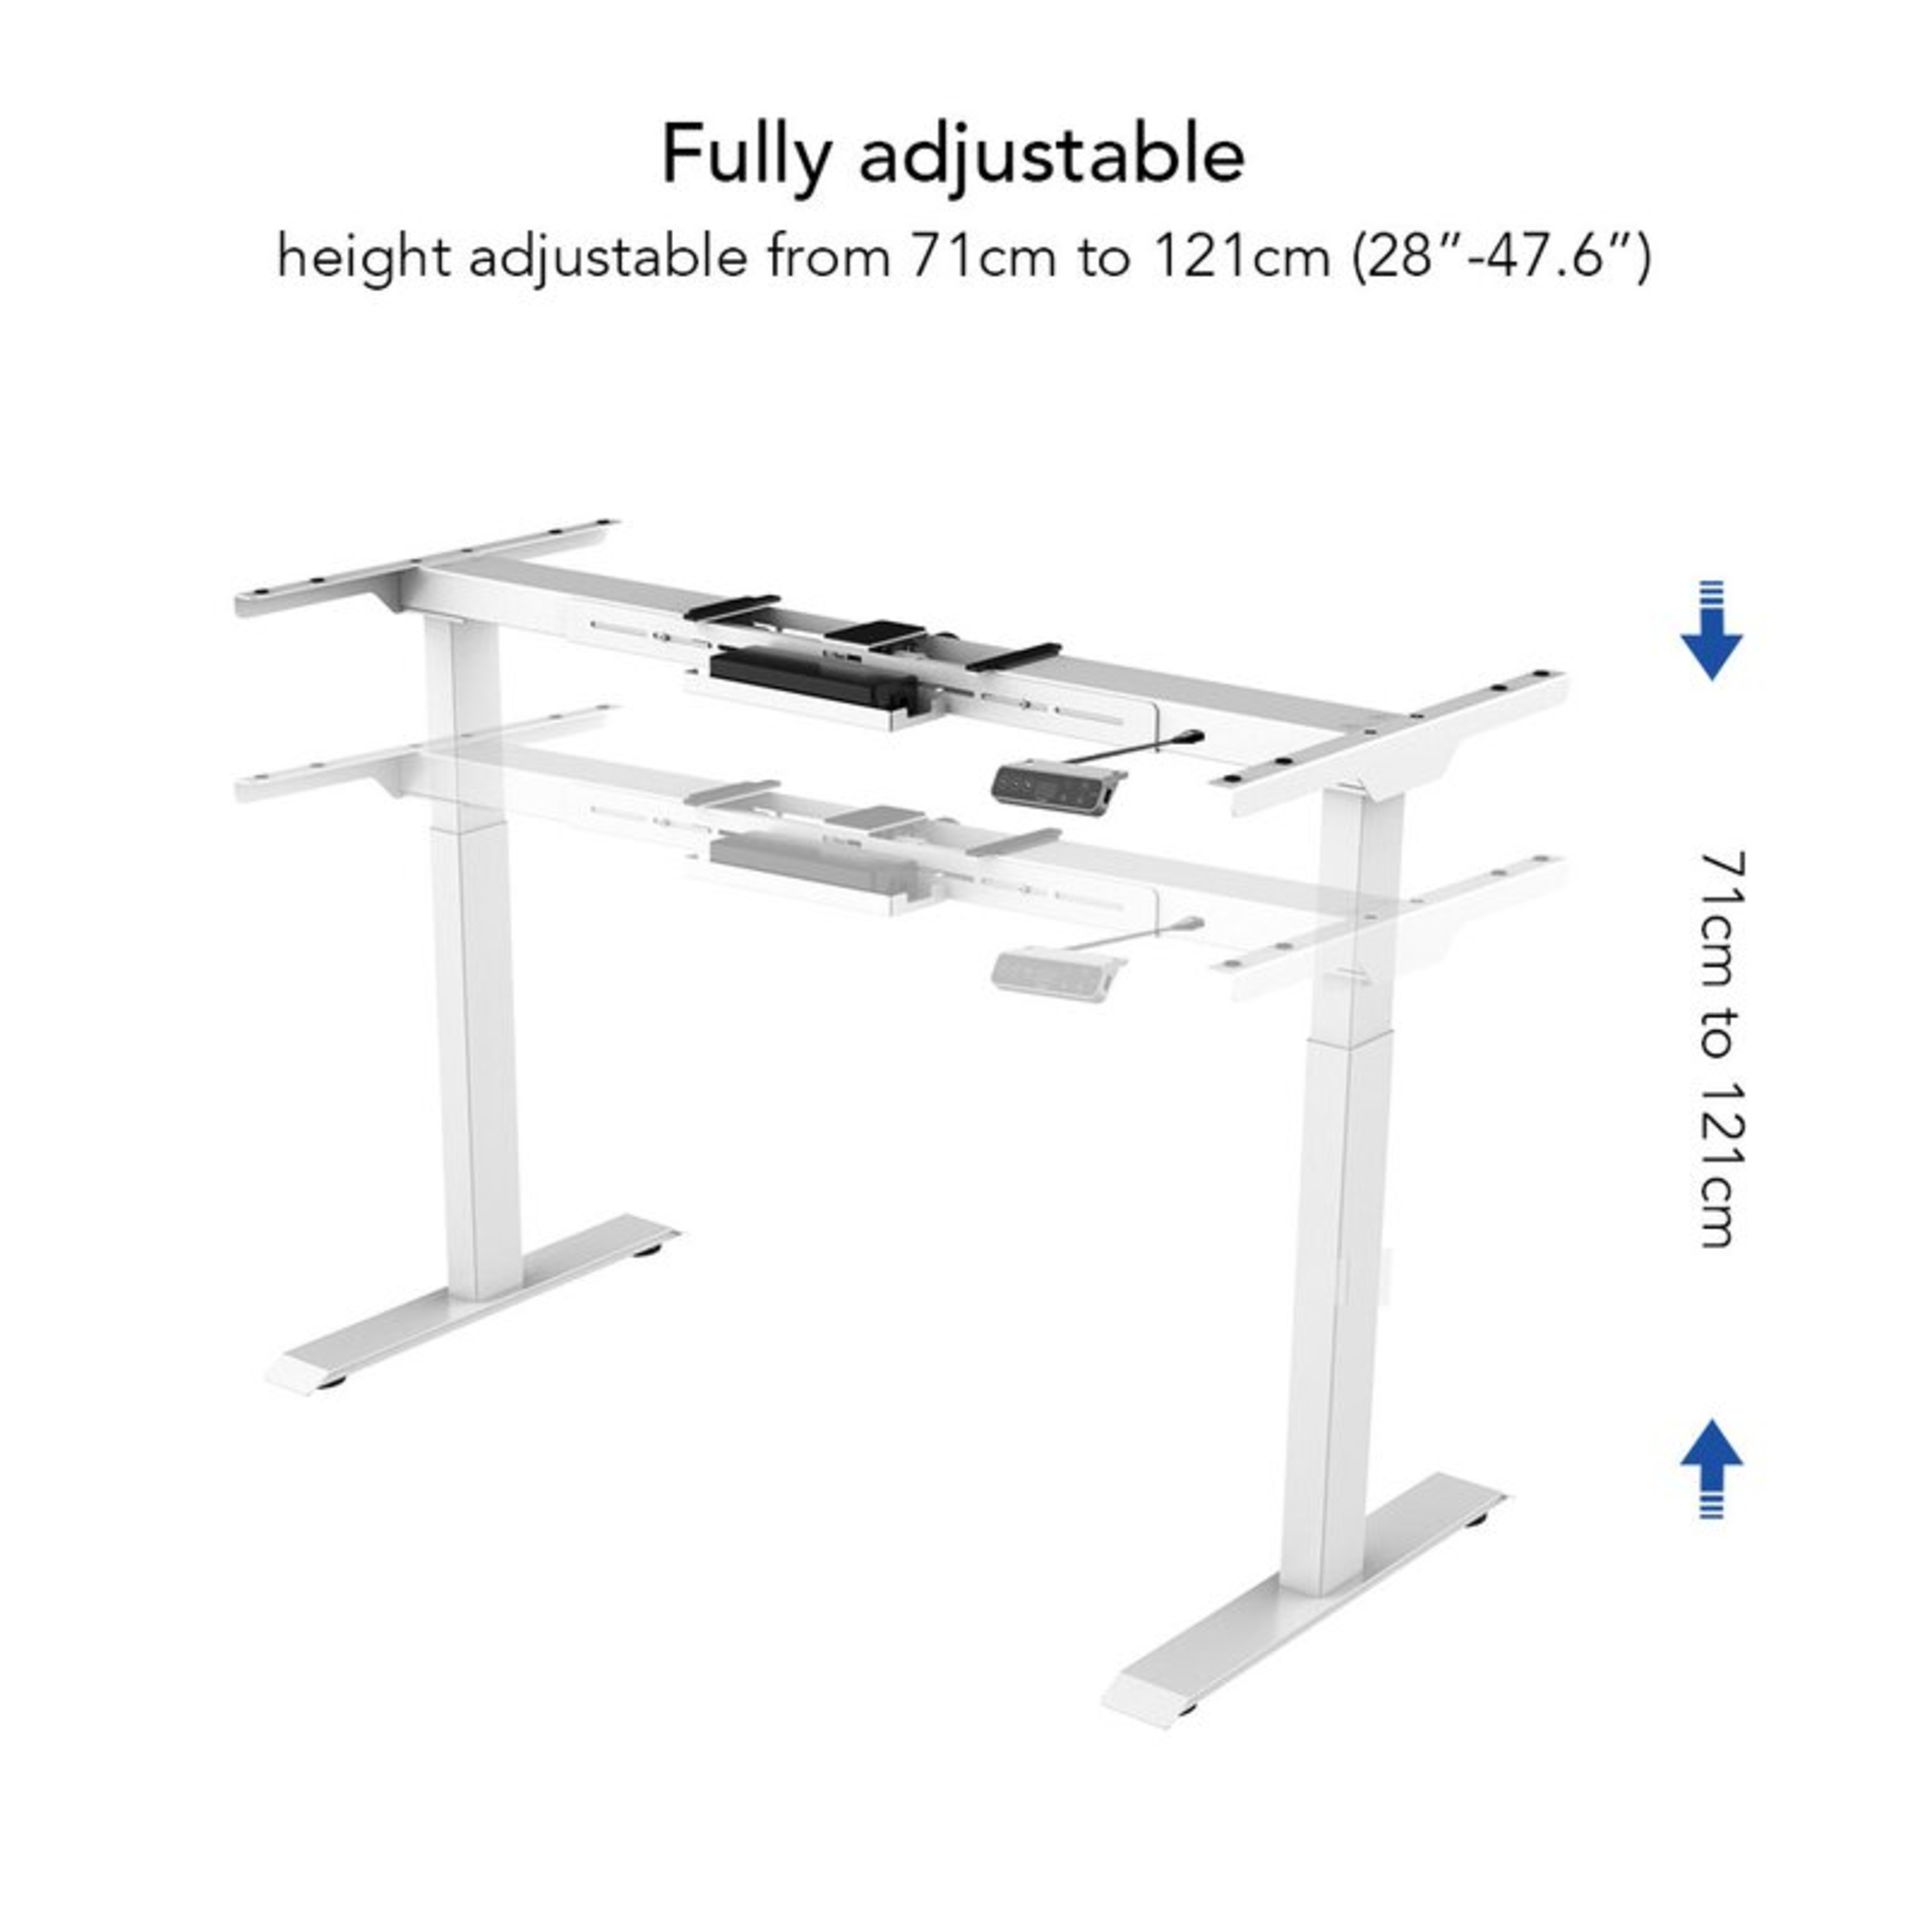 Sanodesk Ez1 Height Adjustable Standing Desk - RRP £395.99 - Image 5 of 5